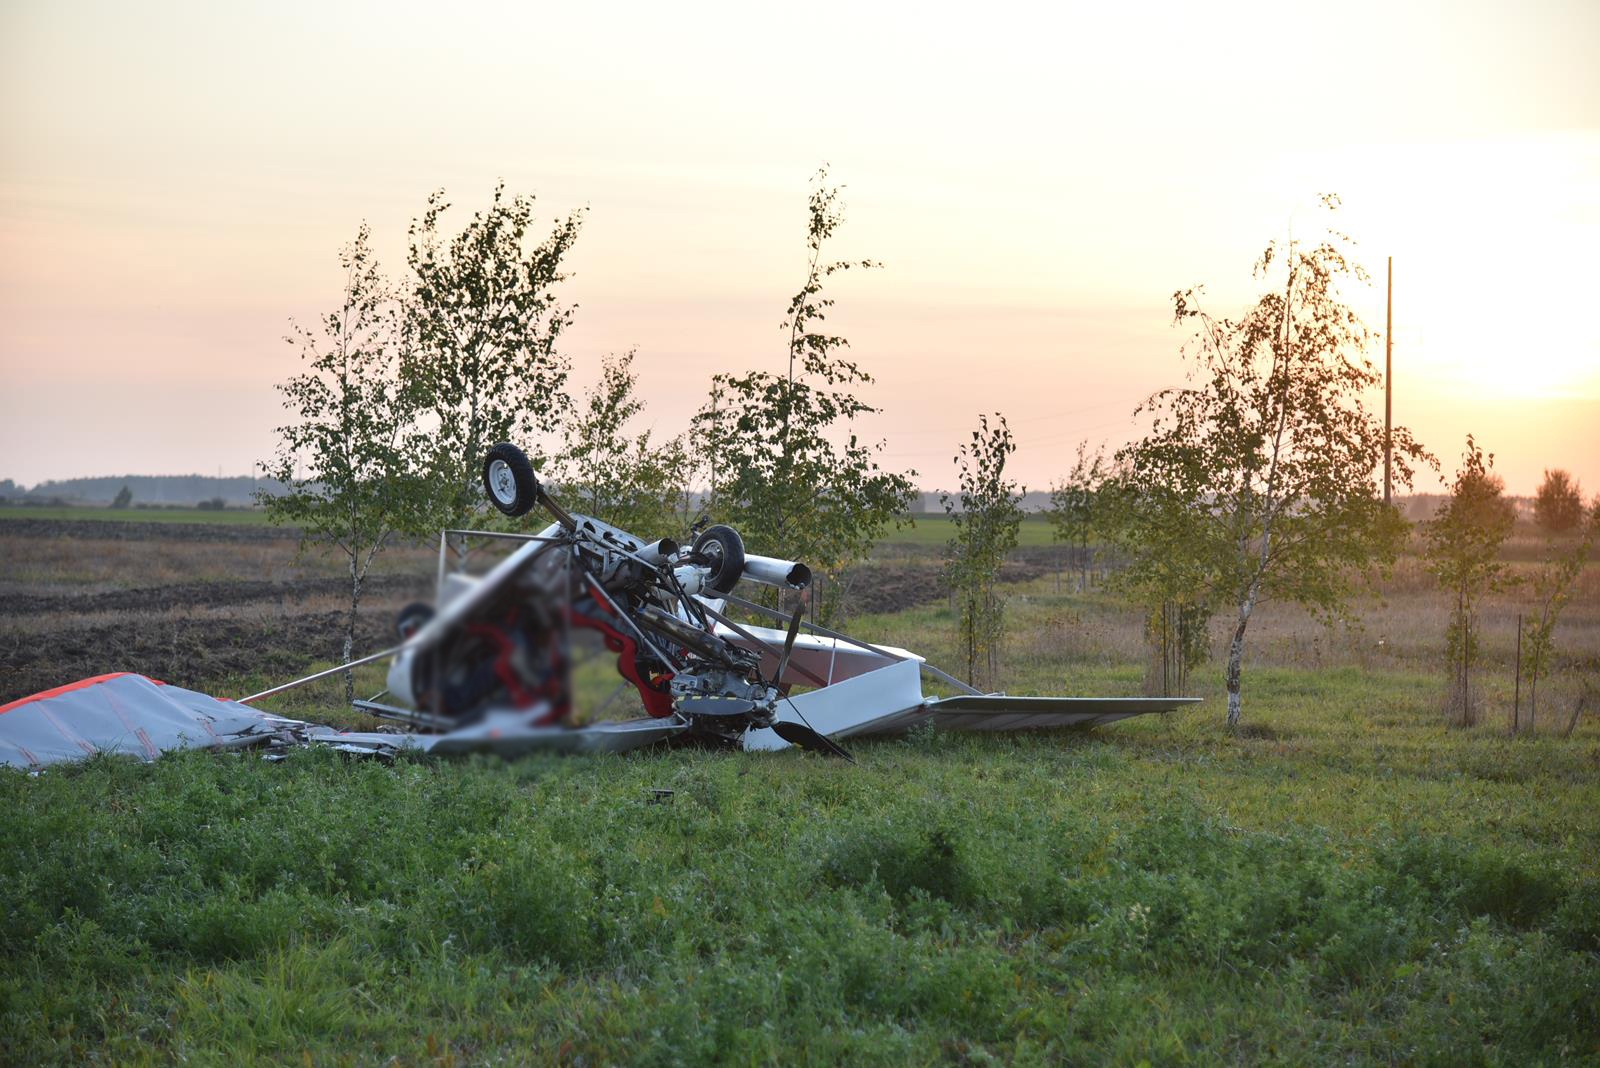 Pakilęs iš Stetiškių aeroklubo aerodromo, Panevėžio rajone sudužo ultralengvasis lėktuvas. Jo pilotas žuvo iškart.